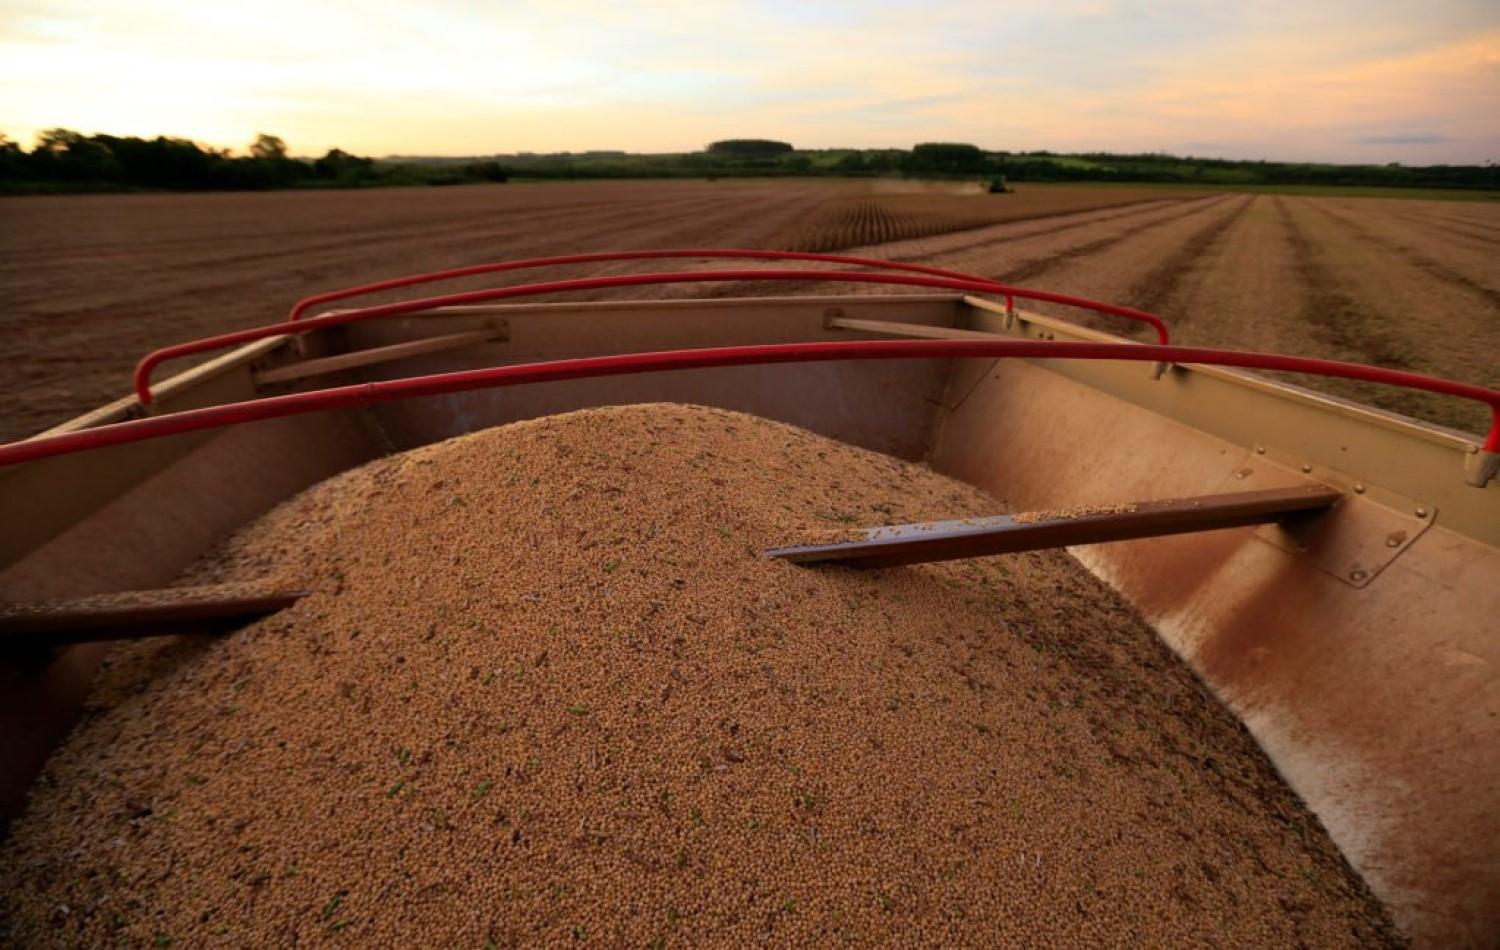 Adiantada, colheita de soja atinge 25,6% da área no Brasil